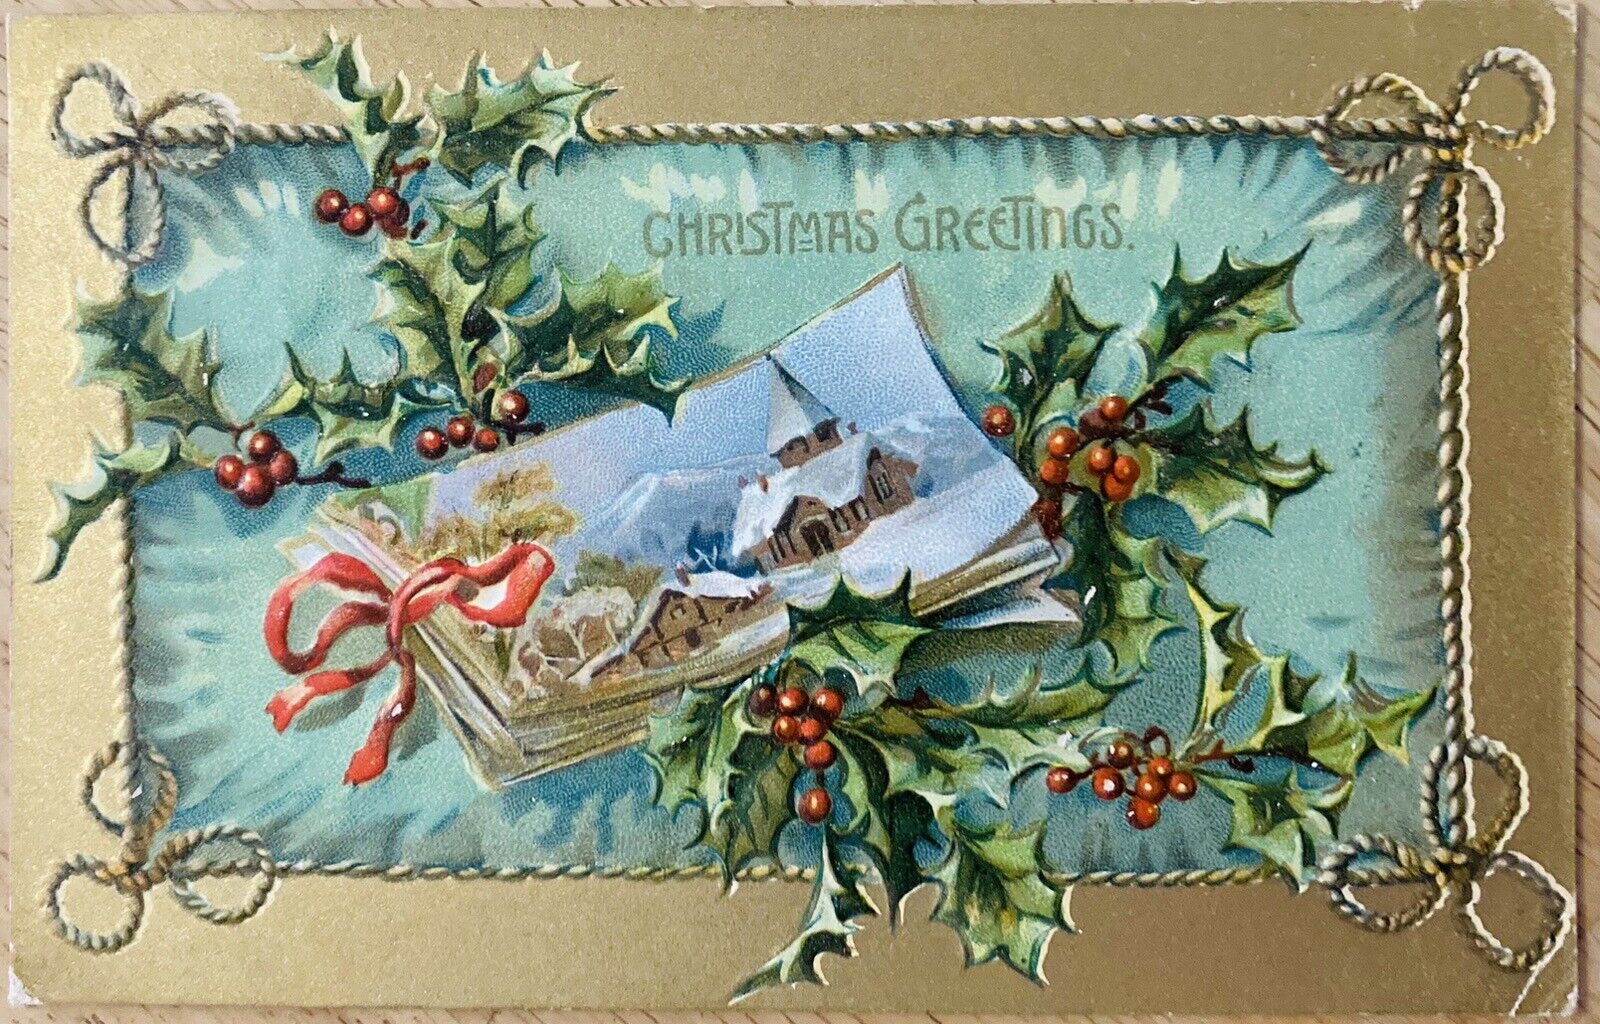 CHRISTMAS PC. C.1908 (A63)~”CHRISTMAS GREETINGS” TUCKS “HOLLY PC. SERIES”